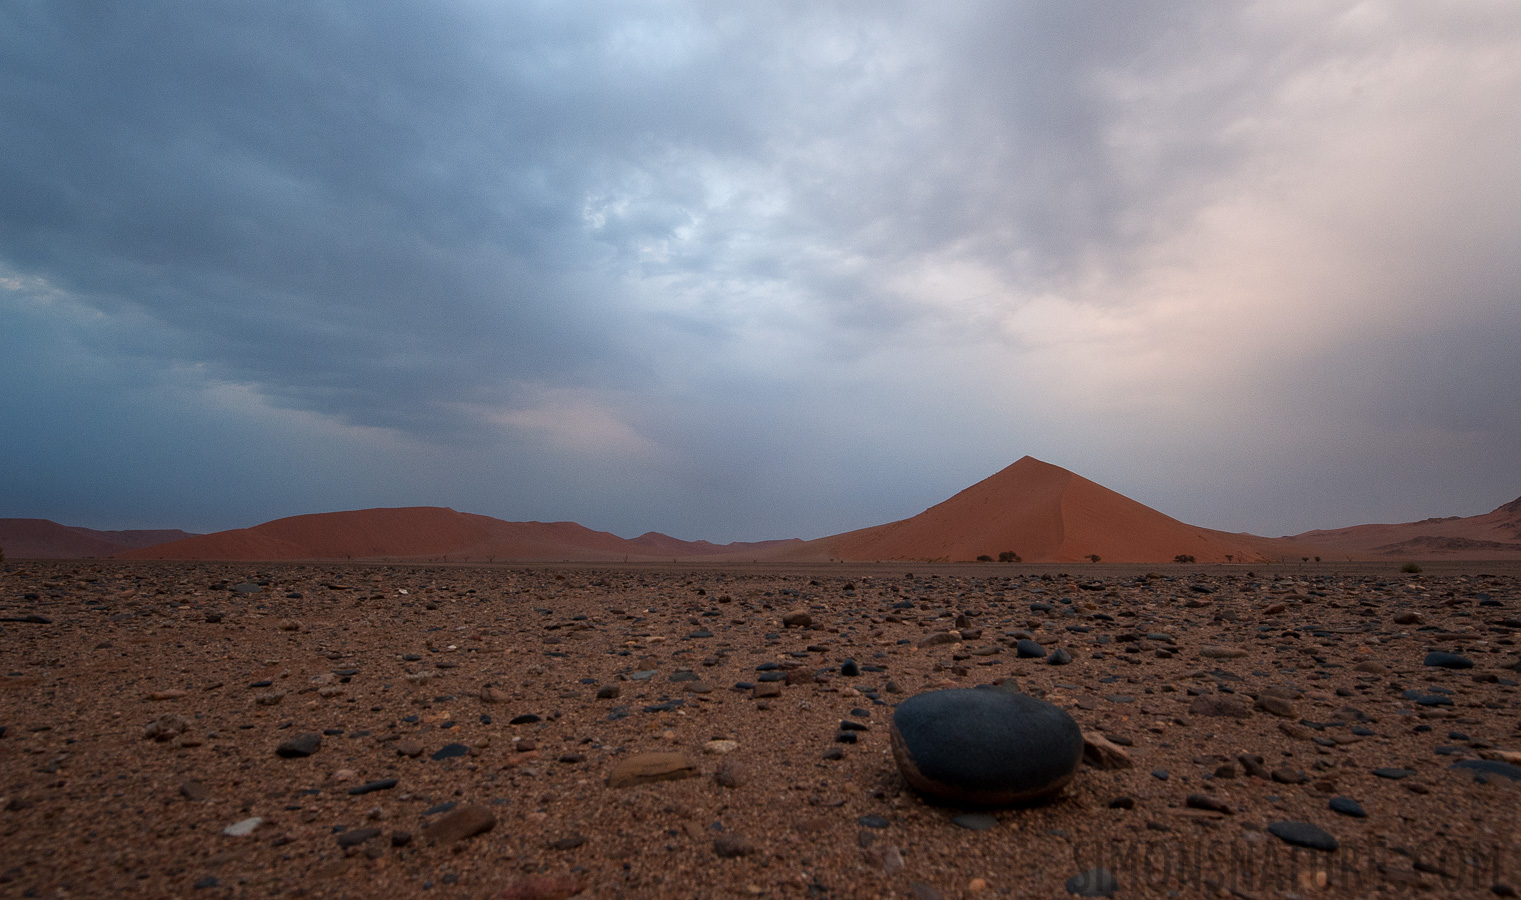 Namib-Naukluft National Park [14 mm, 1/125 sec at f / 11, ISO 1250]